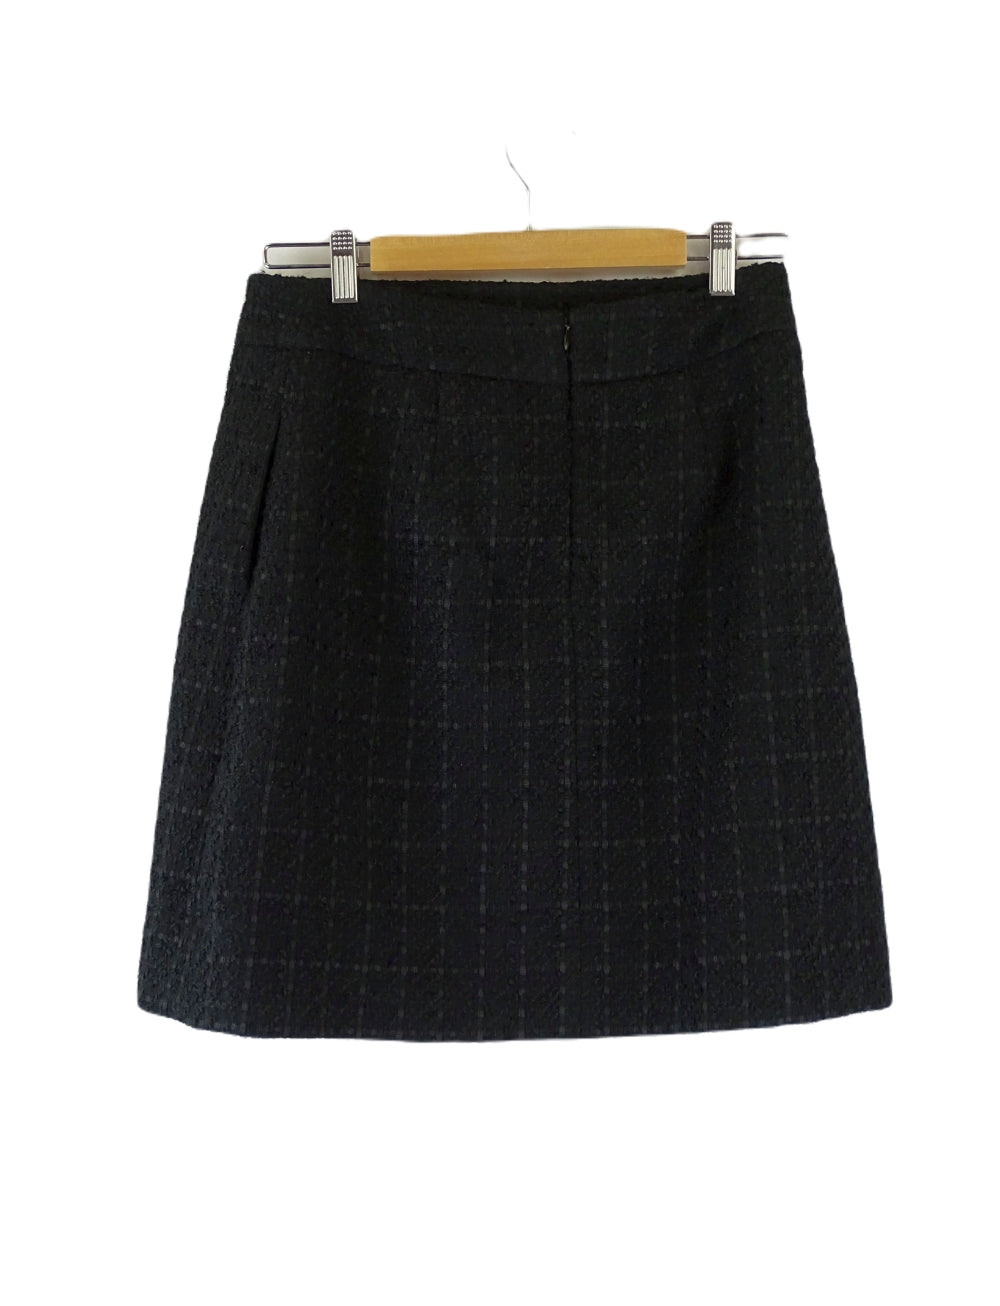 Portmans Black Woven Skirt 10